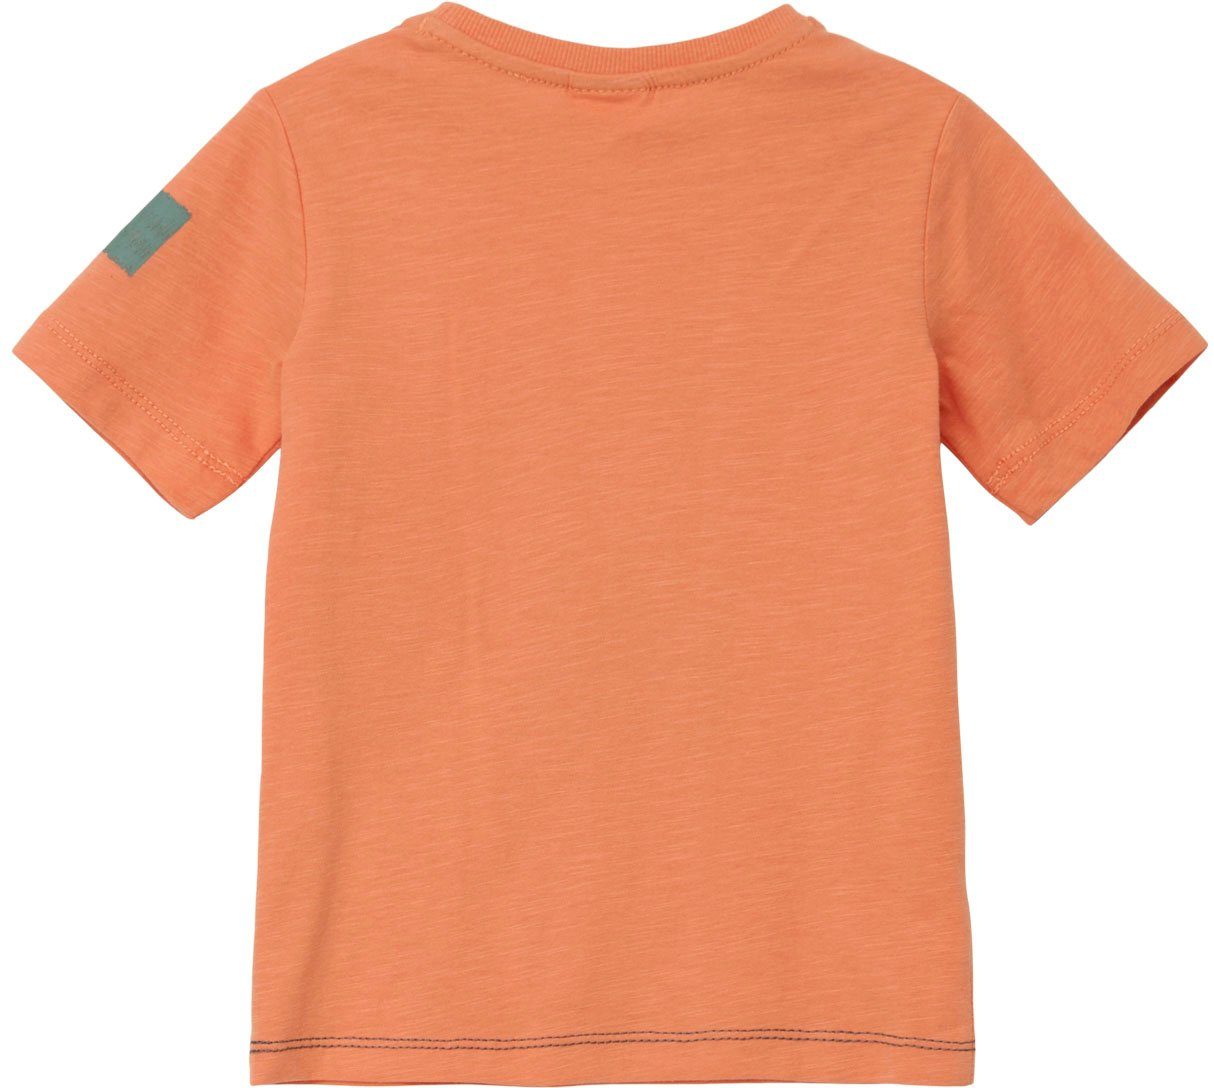 s.Oliver Arm Stickereien am orange Junior T-Shirt